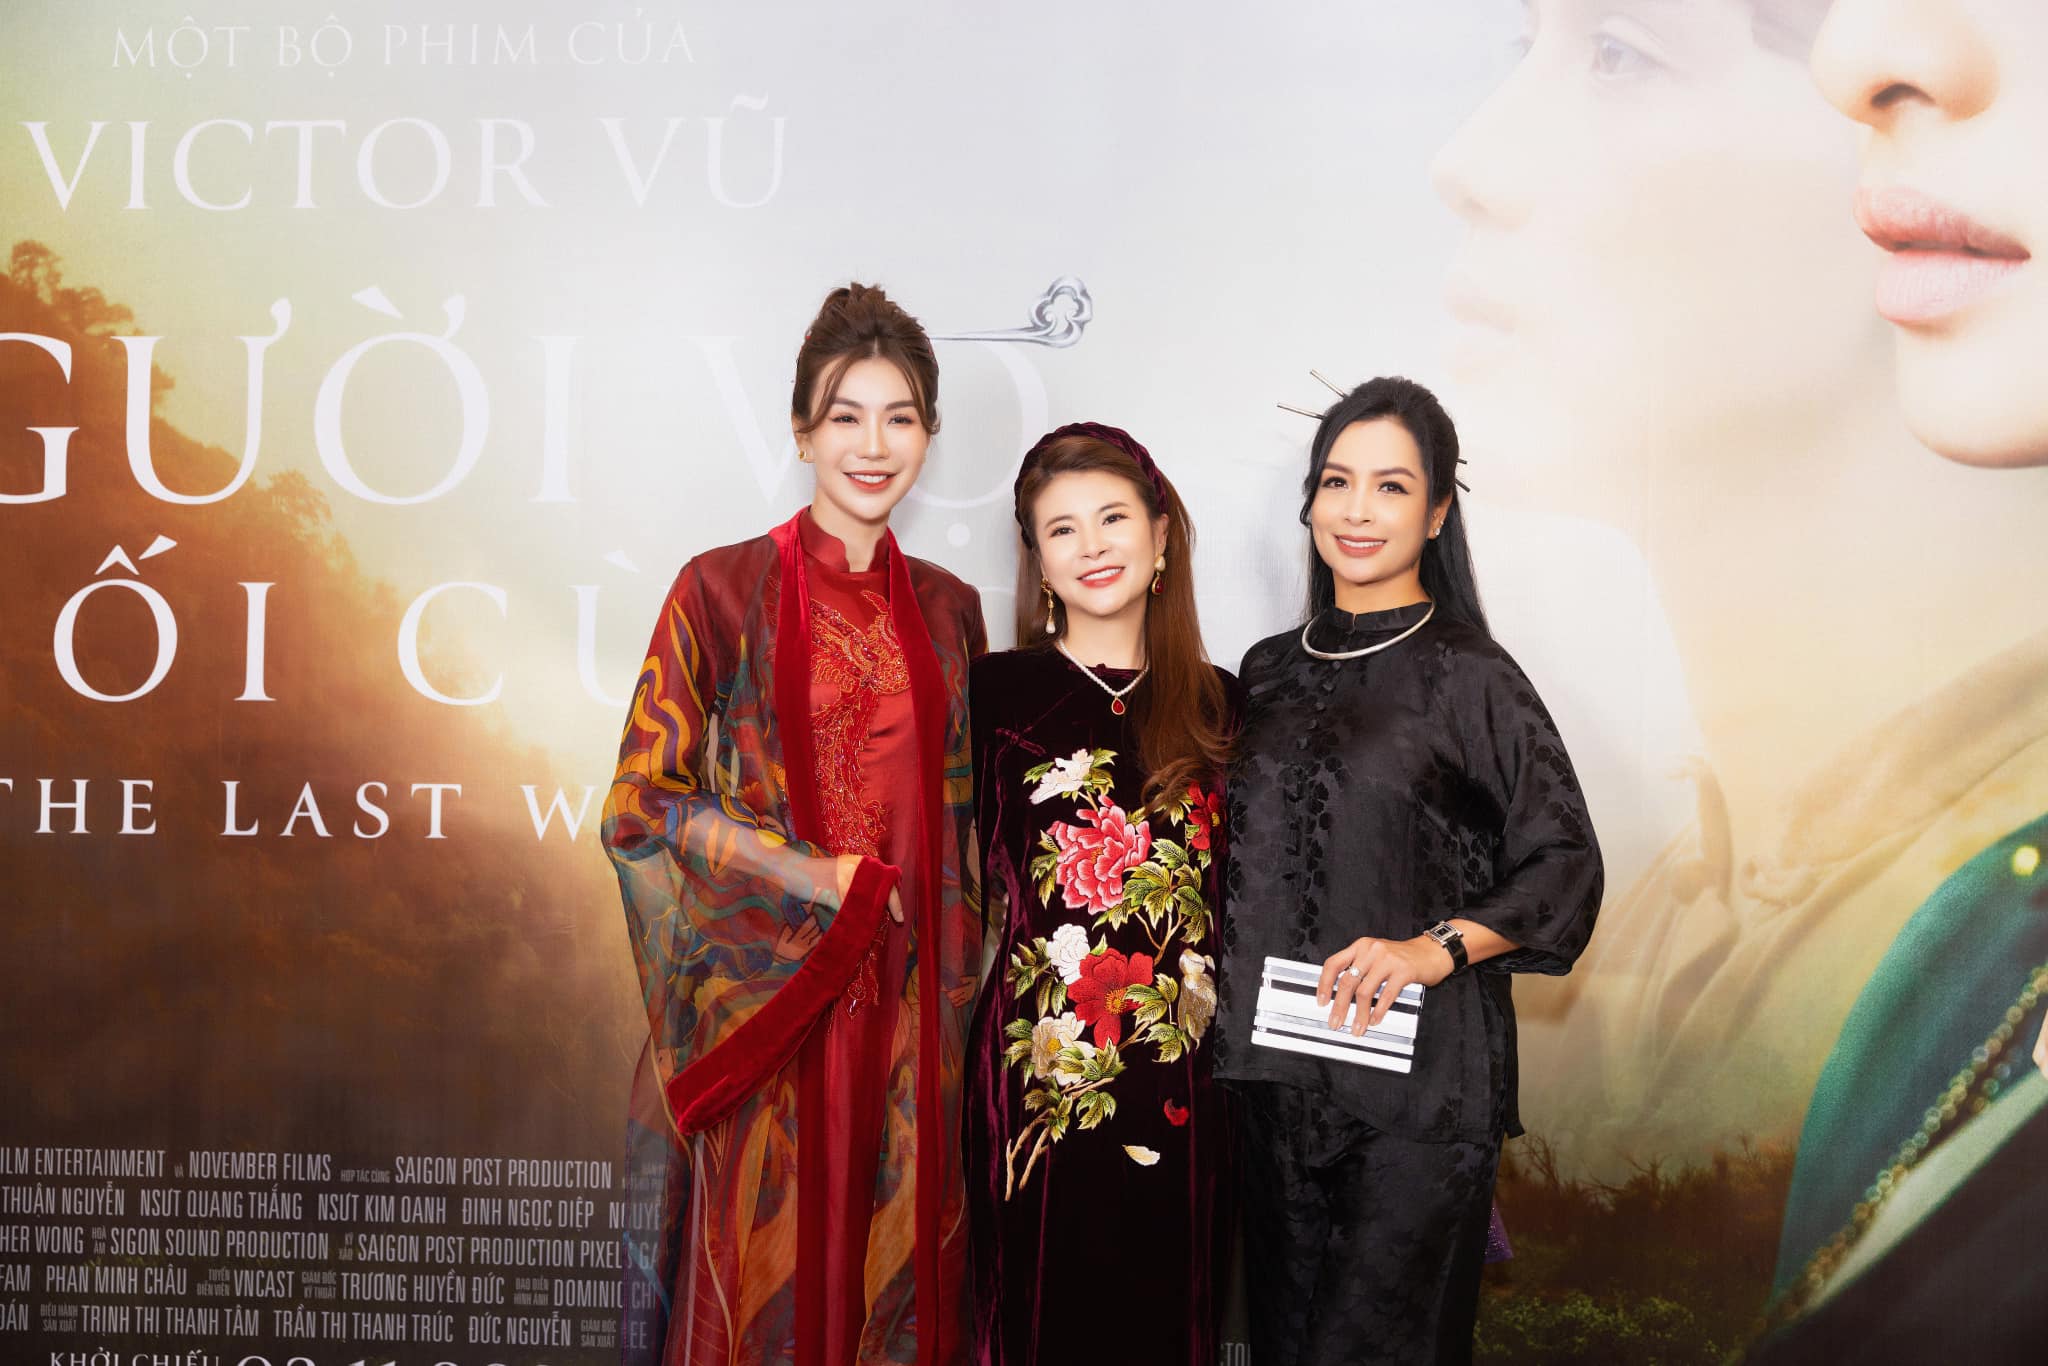 Cựu người mẫu Thuý Hằng, MC Hải Anh đến chúc mừng Kim Oanh và phim “Người vợ cuối cùng”
